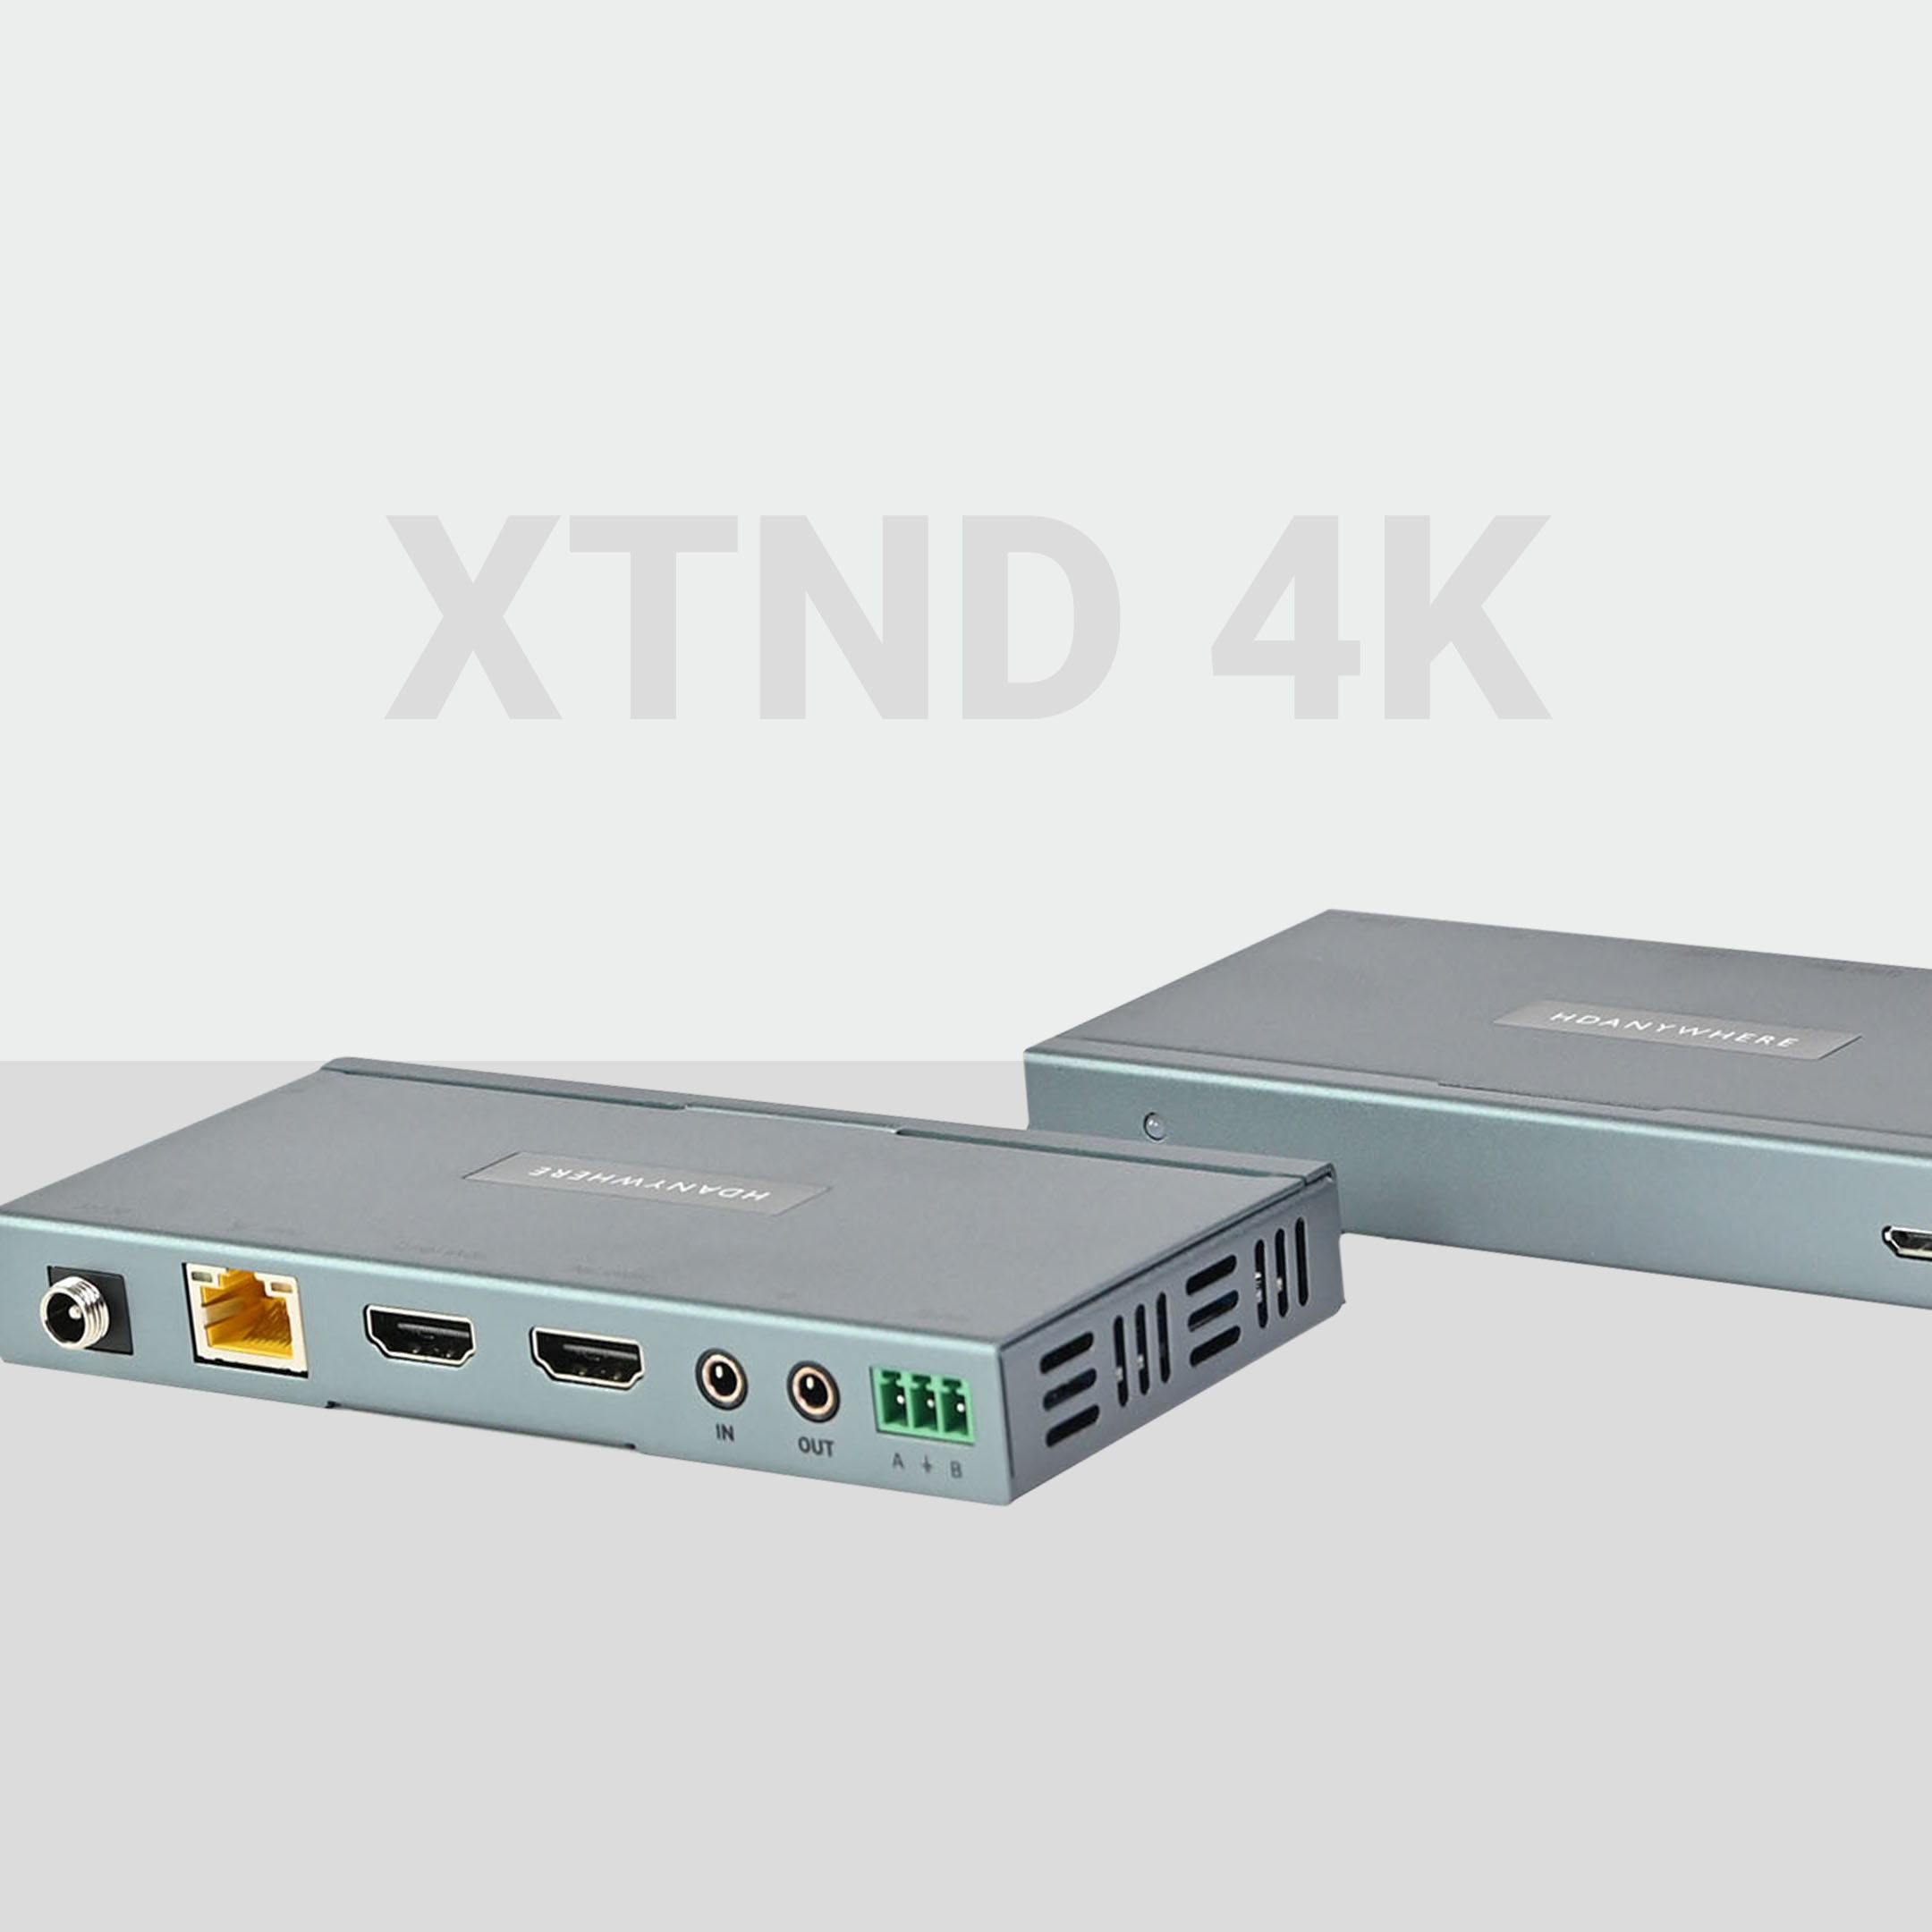 XTND 4K (100) TPC